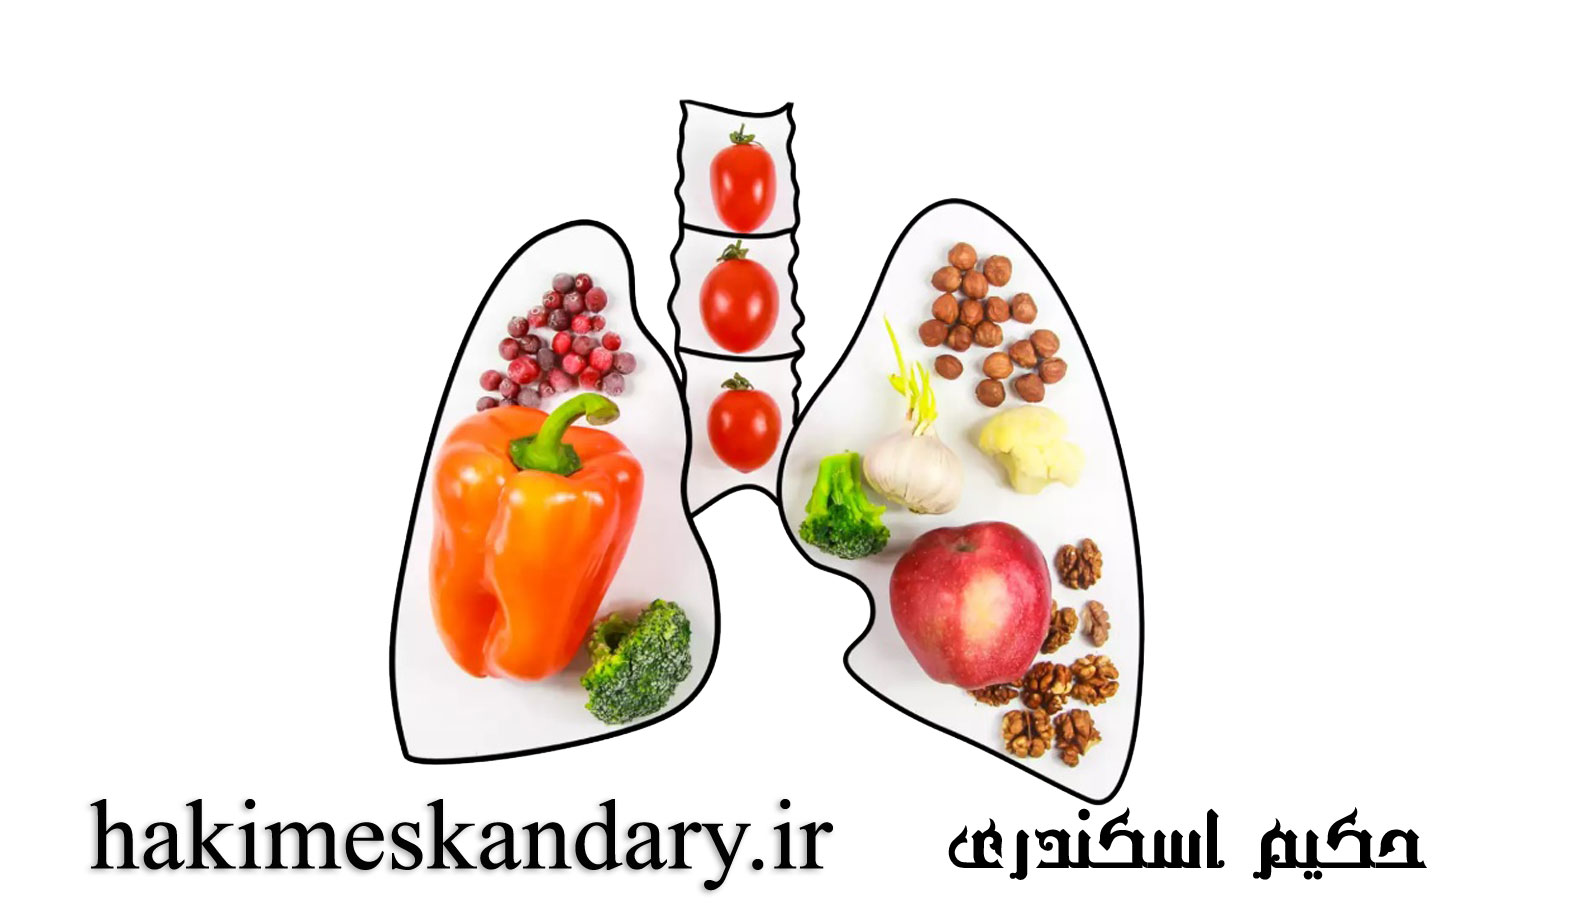 رژیم غذایی سالم برای پاکسازی ریه و تقویت سیستم تنفسی از منظر حکیم اسکندری